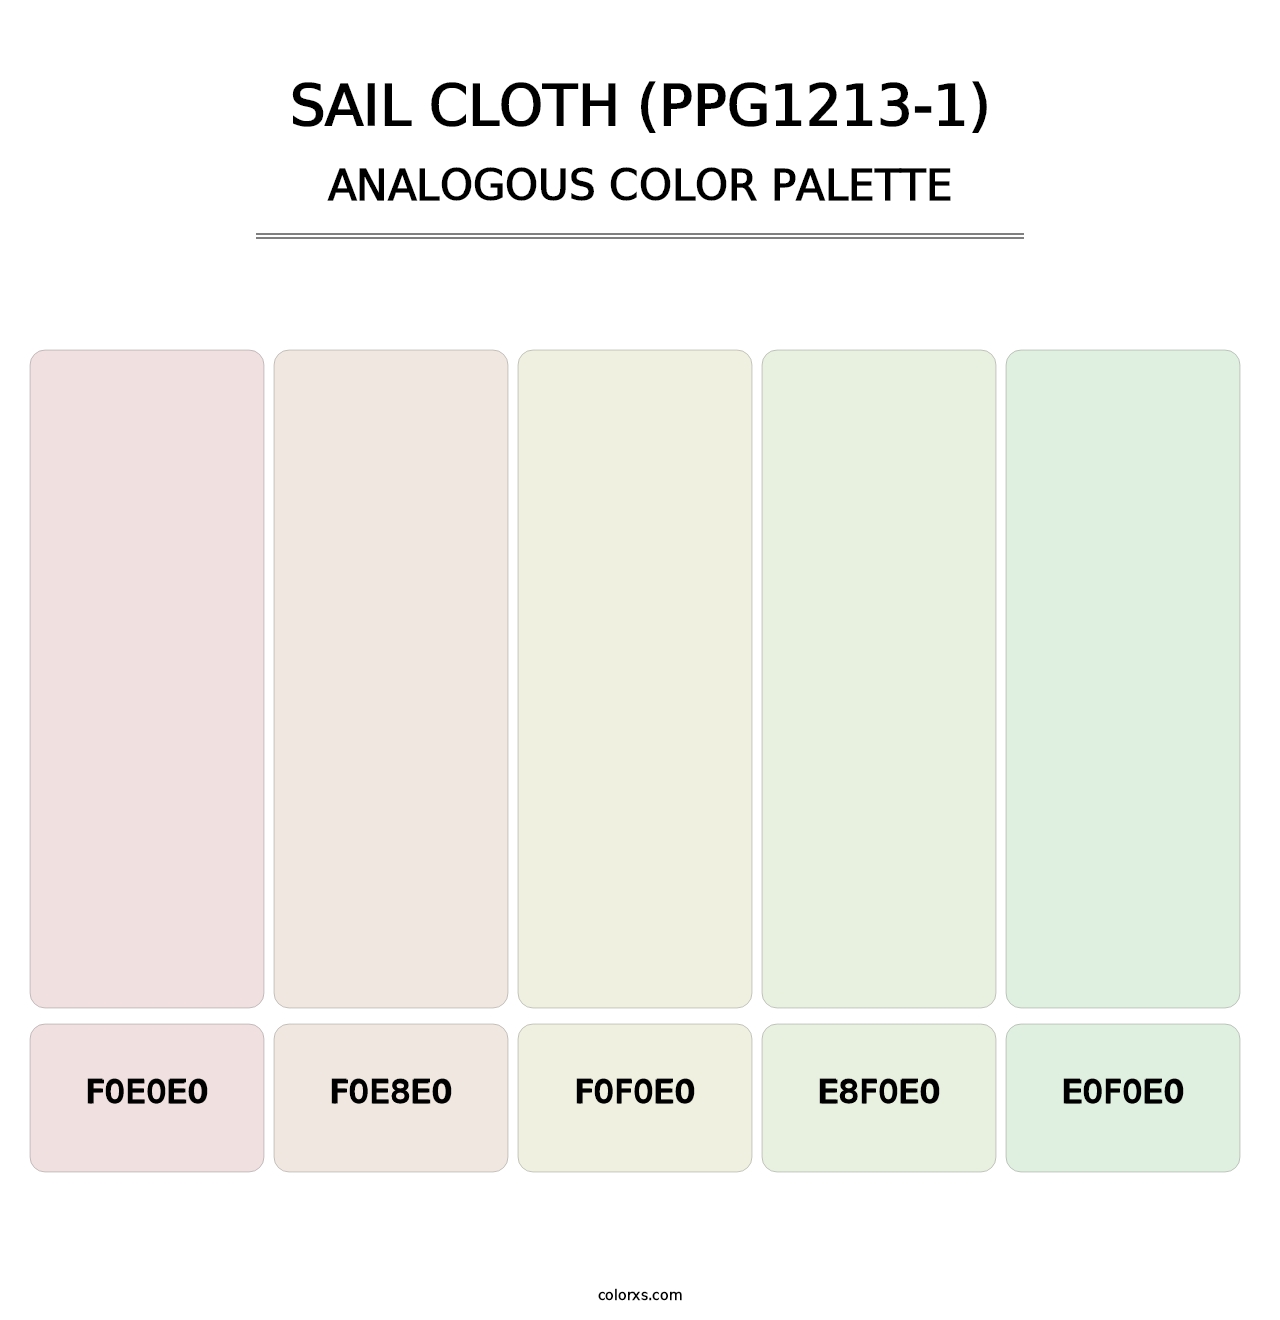 Sail Cloth (PPG1213-1) - Analogous Color Palette